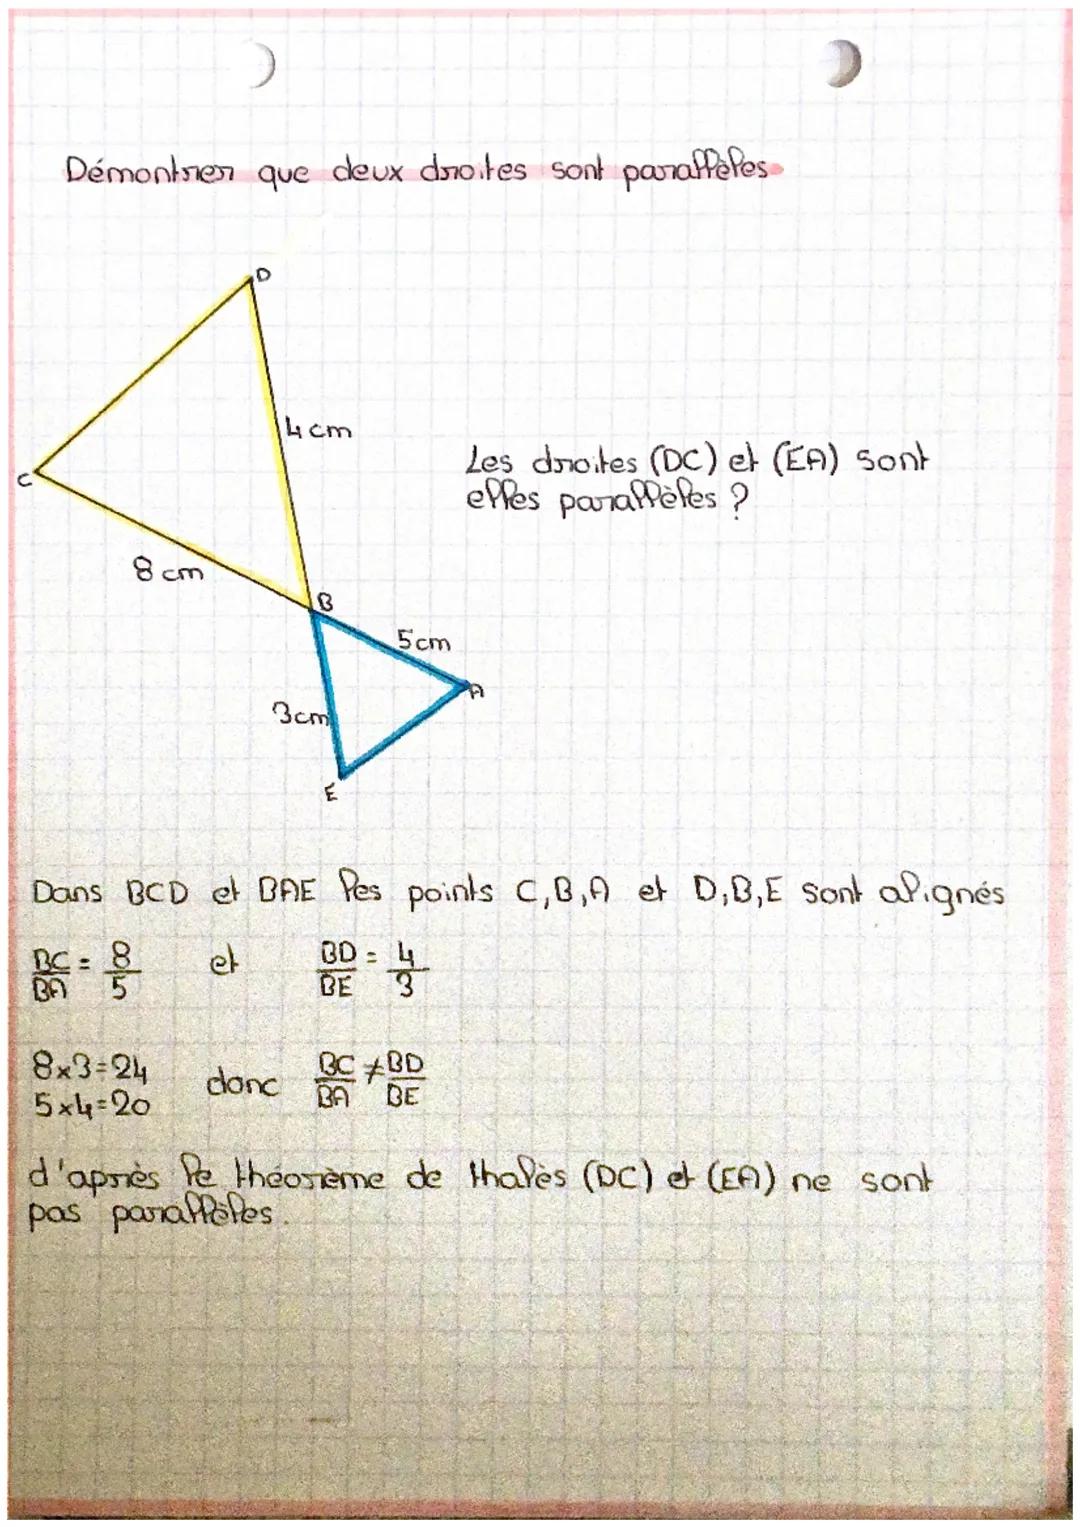 scal
théorème de thales i
->Le théorème de thales sent à trouver une
dans un biangle et dine si deux droites sont parallèles ou pas.
Pongueu